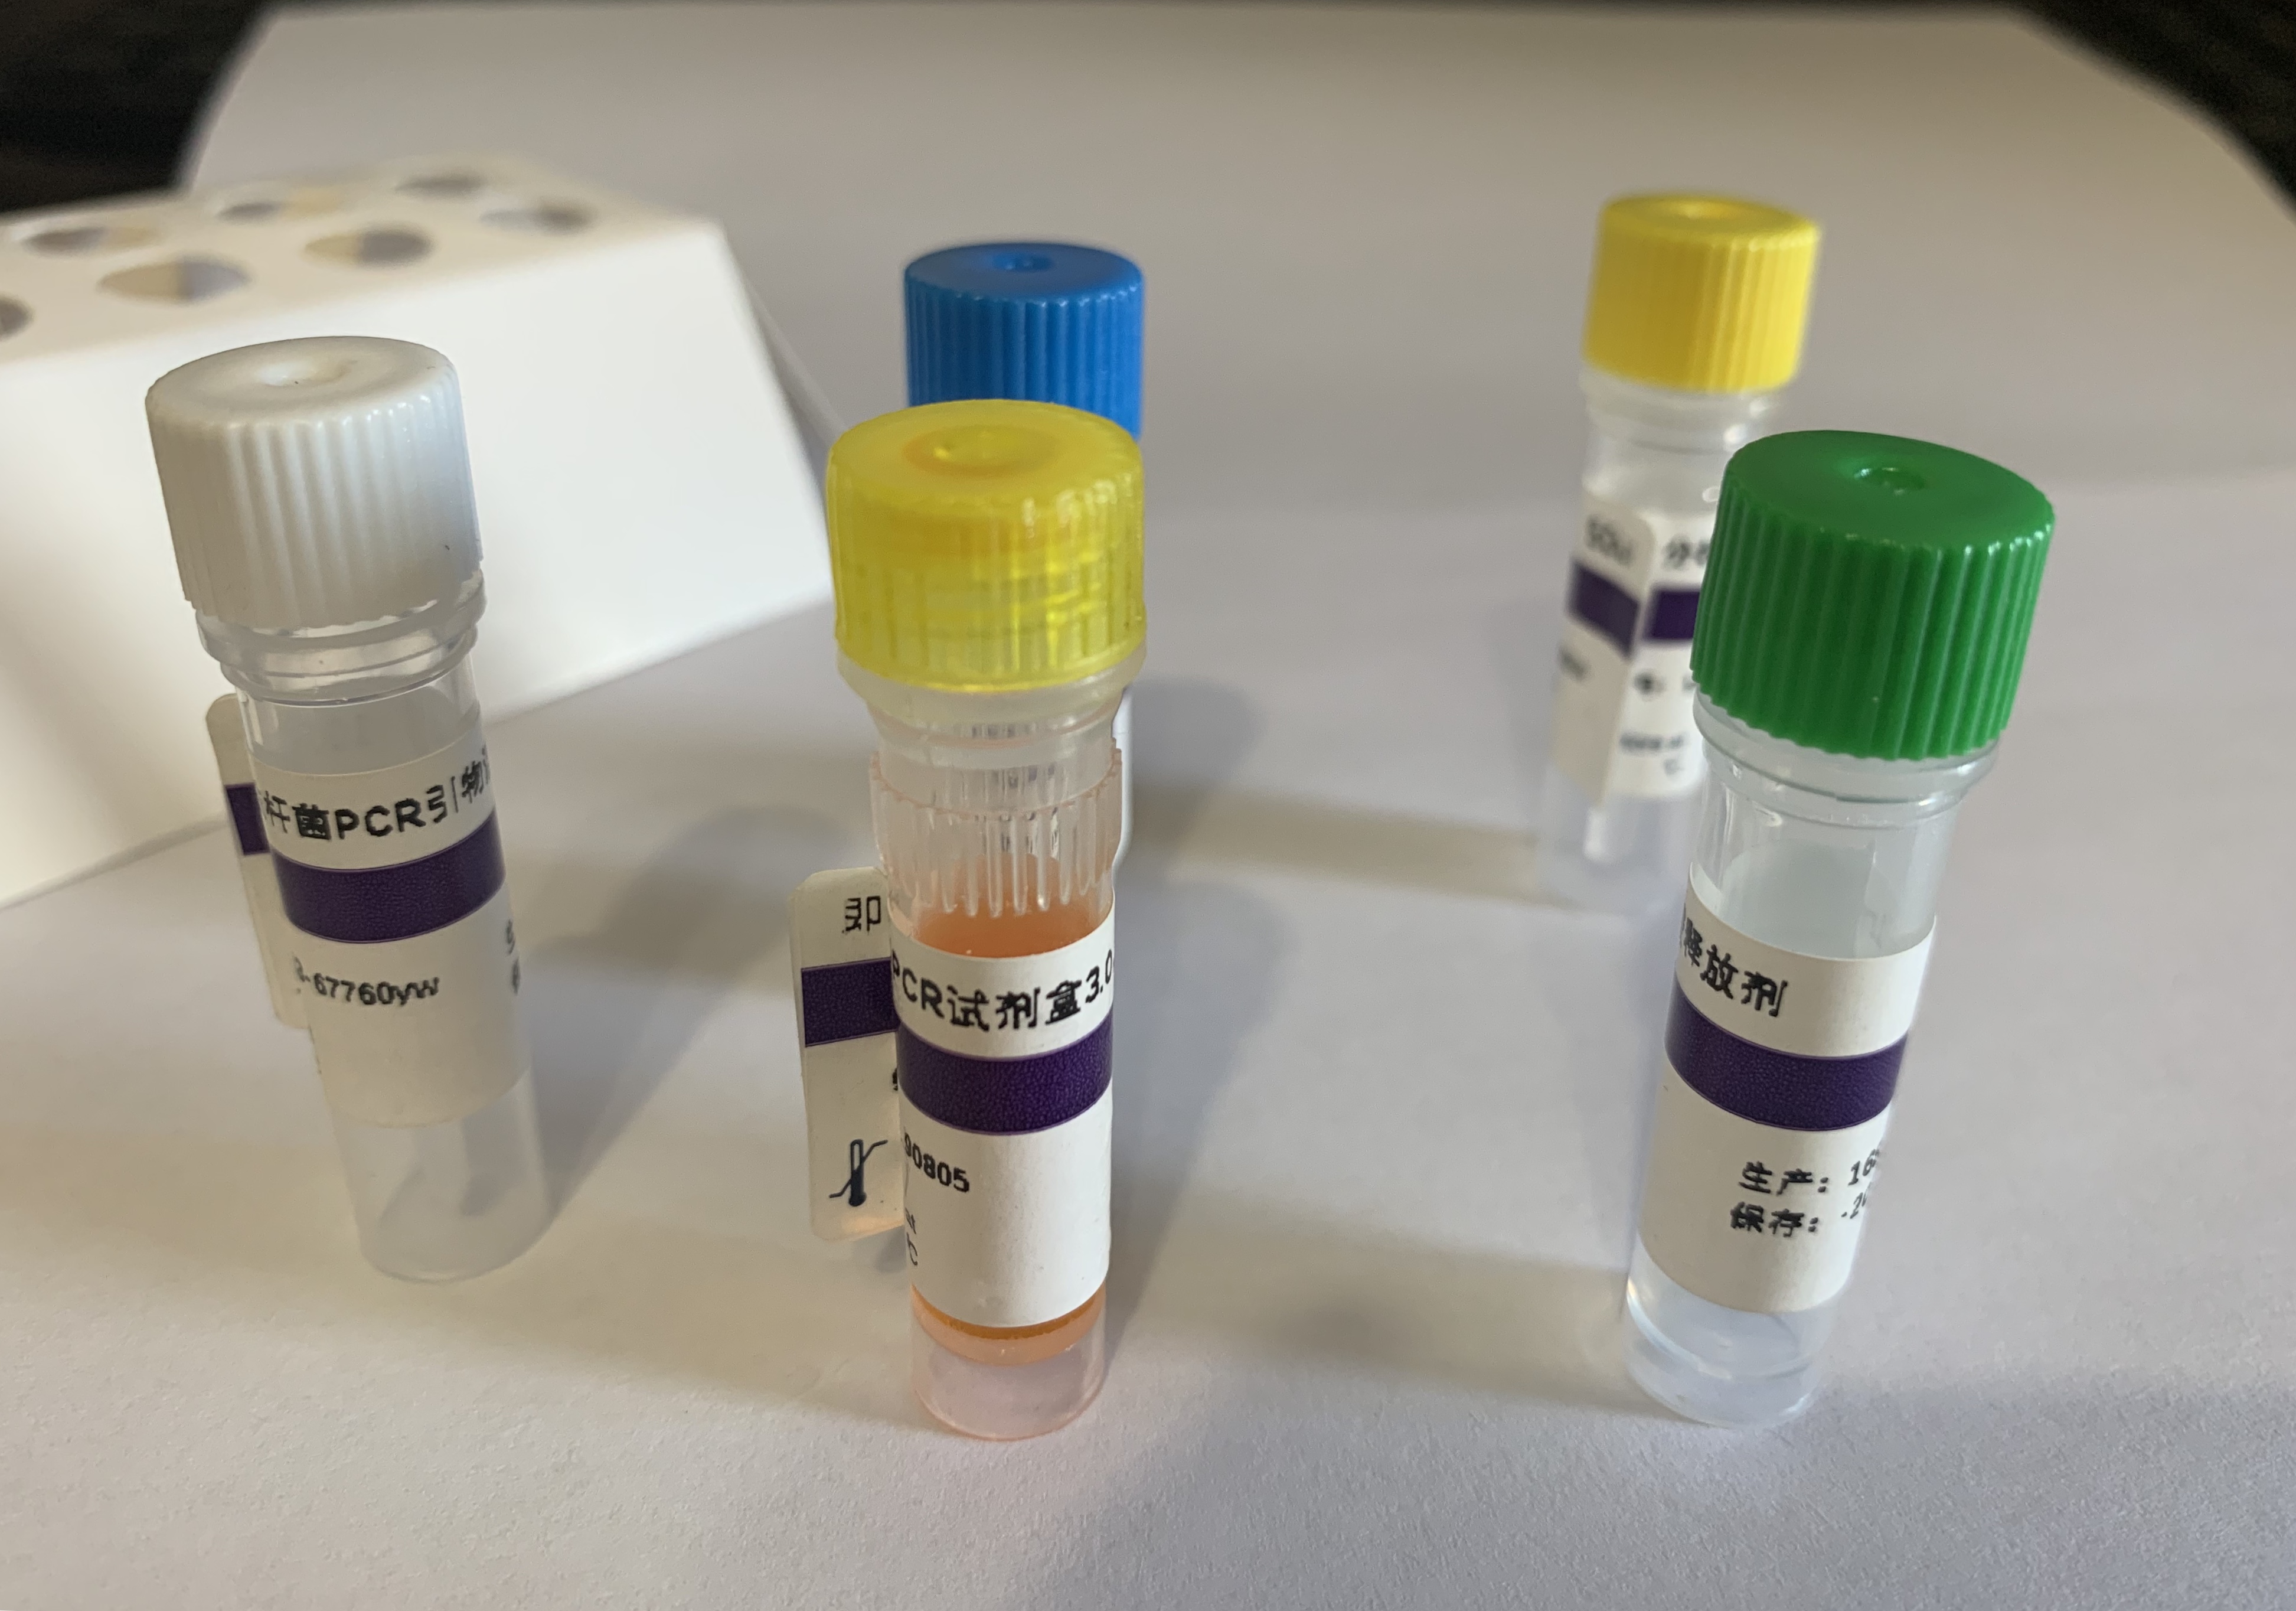 转基因品系水稻BT63探针法qPCR试剂盒